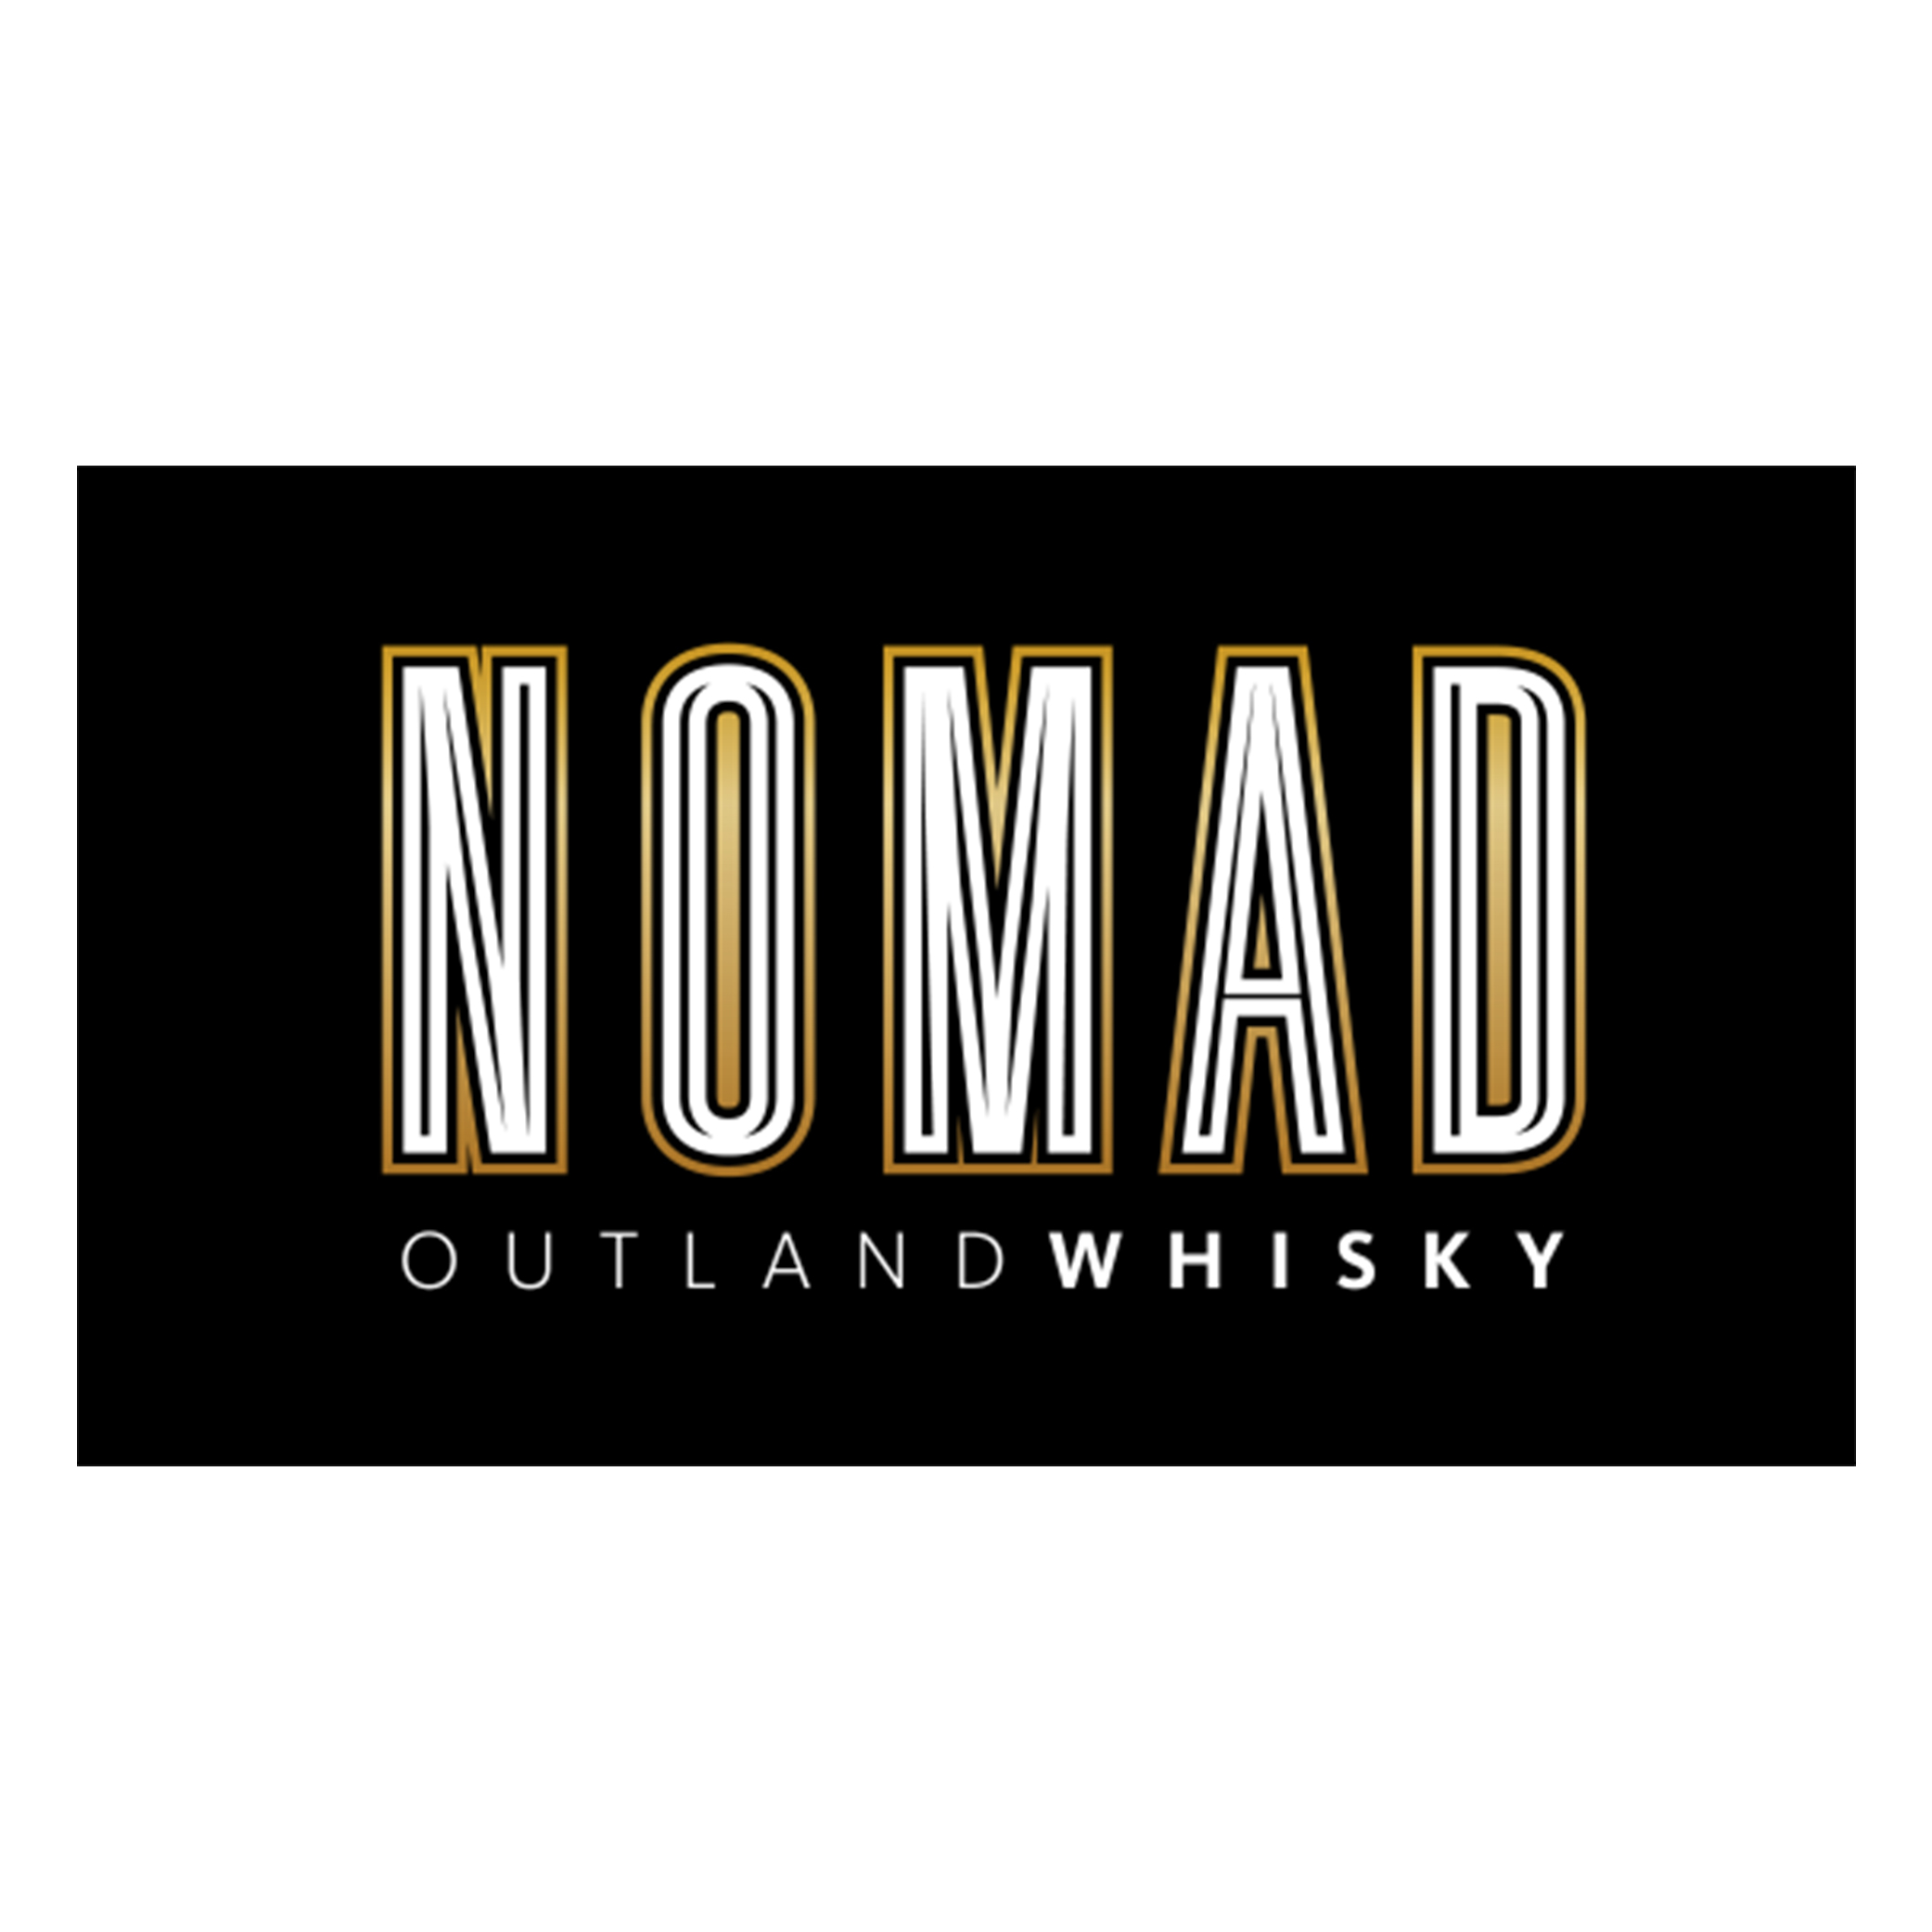 Pancaniaga Indoperkasa - Nomad Outland Whisky